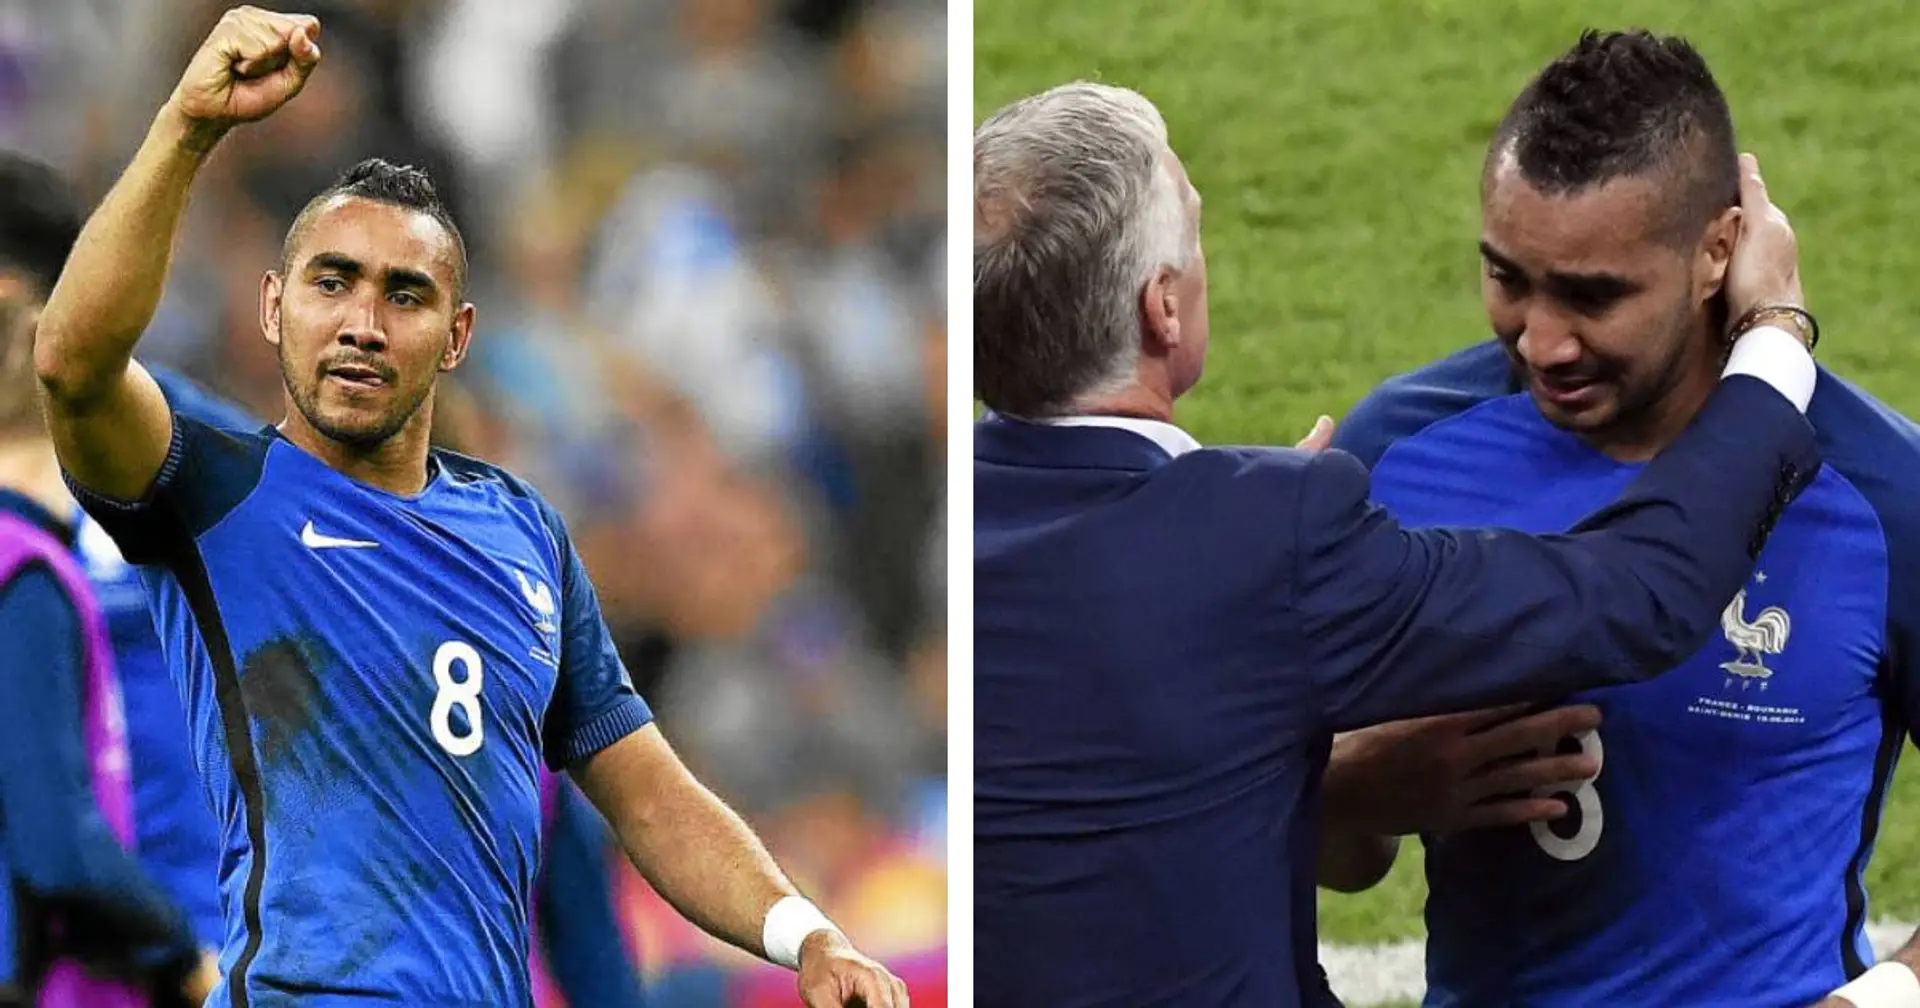 "J’ai lâché toute cette pression", Payet explique pourquoi il est sorti en larmes après son but victorieux lors du match d'ouverture de l'Euro 2016